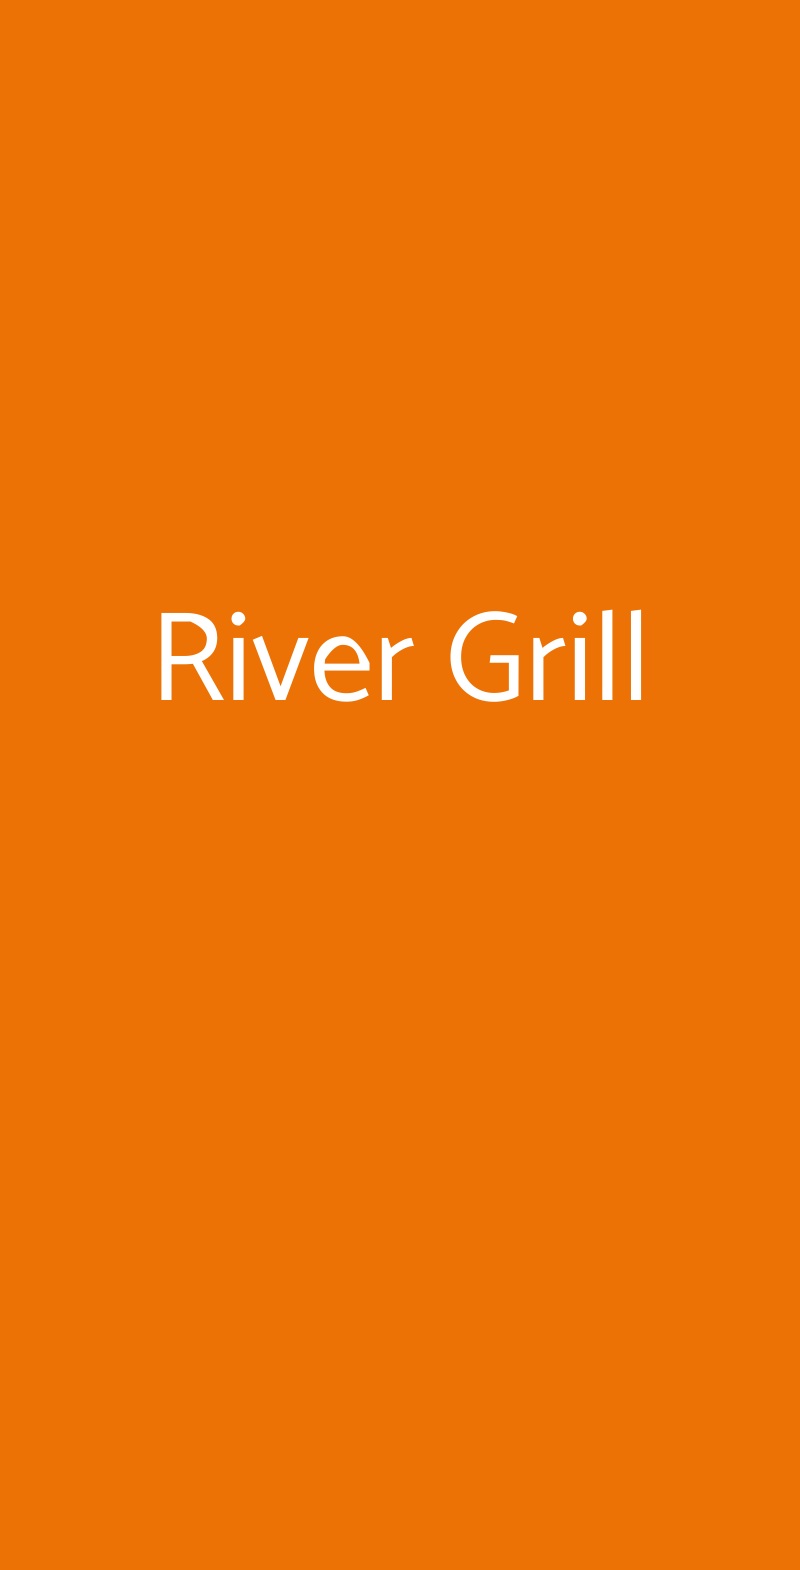 River Grill Roma menù 1 pagina